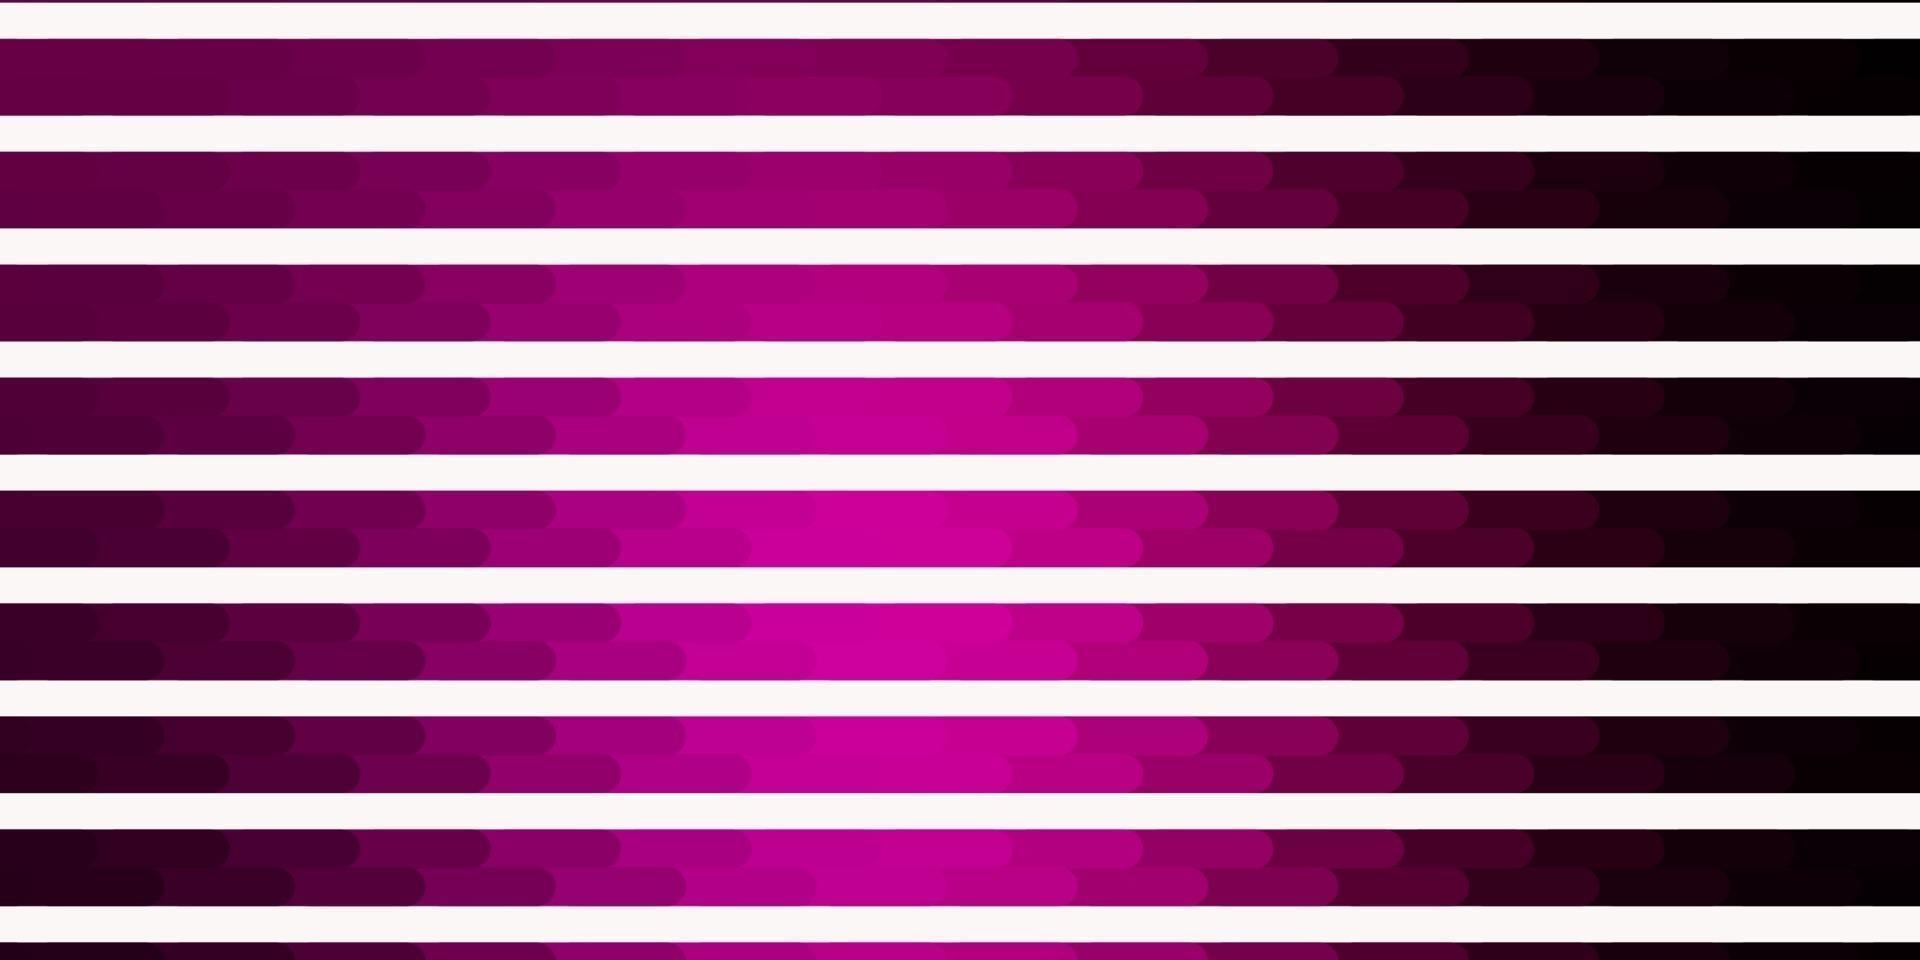 modelo de vetor rosa escuro com linhas.